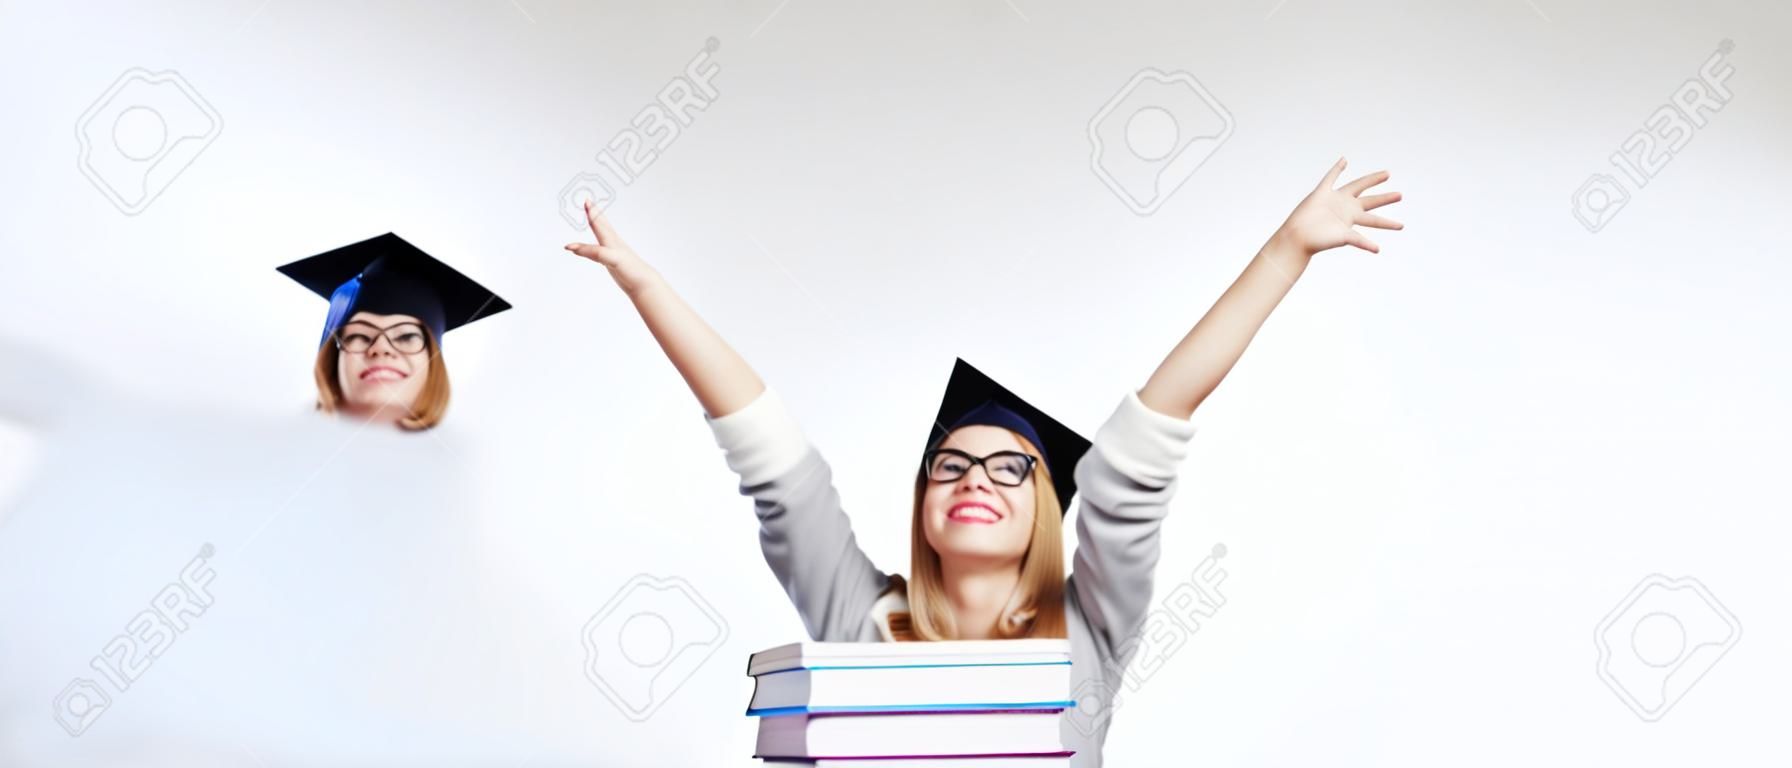 conceito de educação - imagem de estudante feliz no boné de graduação com pilha de livros